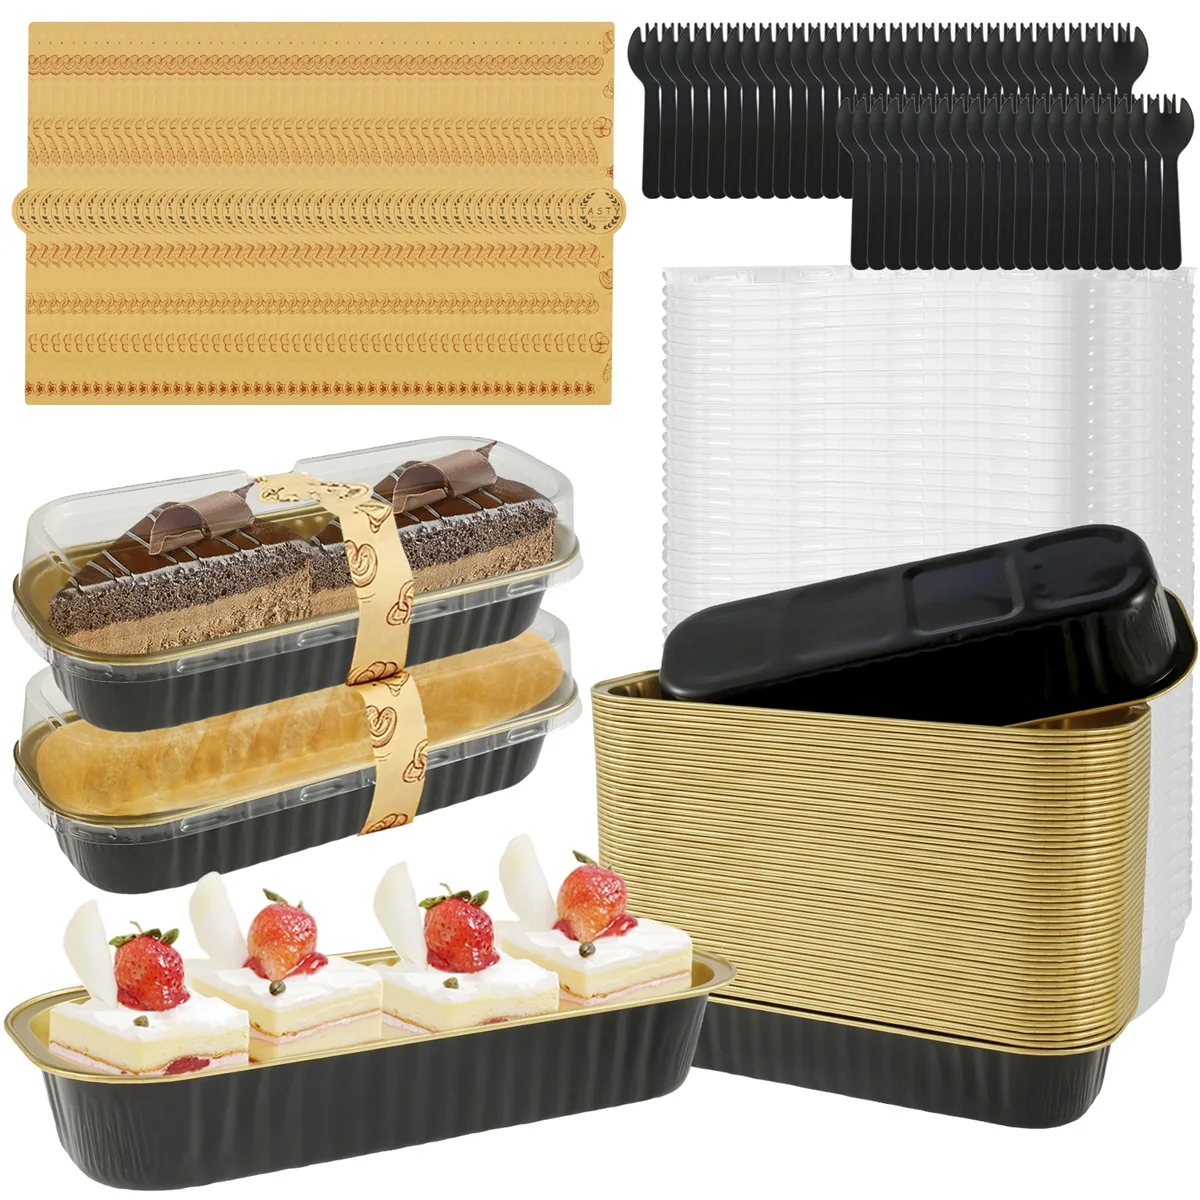 https://ae01.alicdn.com/kf/S27422a136895487296af59dcb7042675T/50-100Pcs-200ml-Mini-Loaf-Pans-Heat-Resistant-Aluminum-Foil-Baking-Pans-Reusable-Rectangle-Foil-Bread.jpg